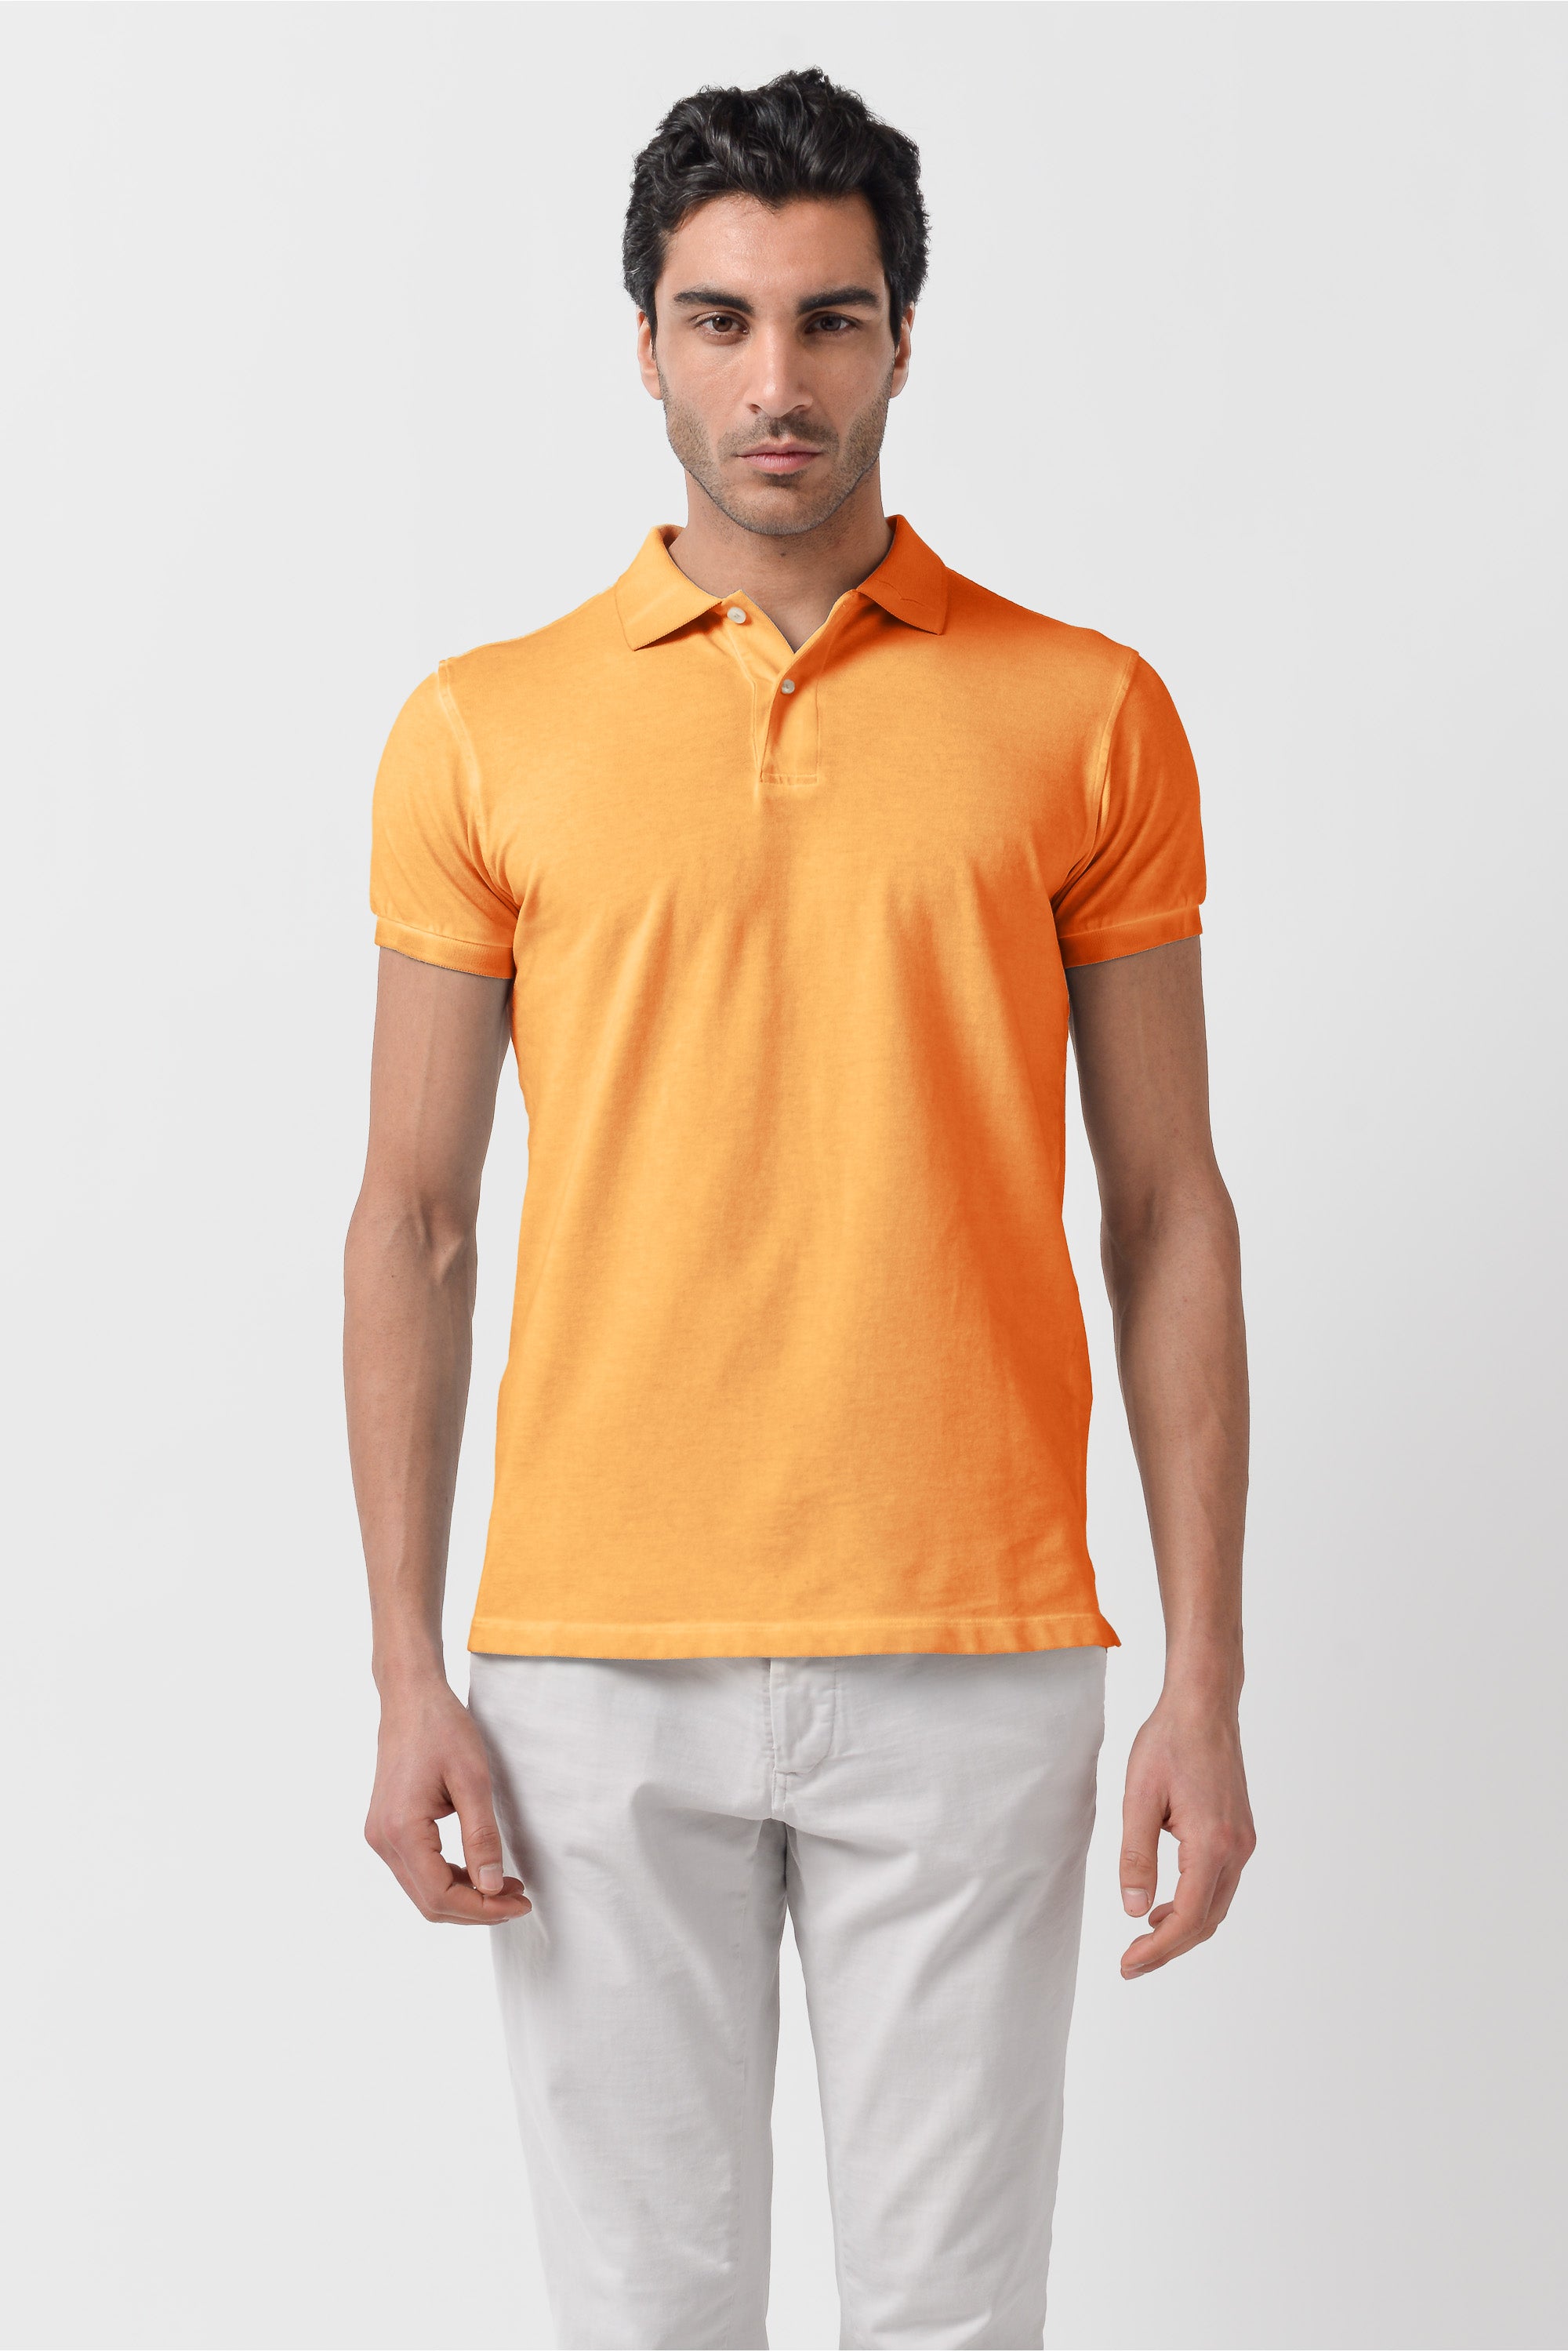 Club Polo Shirt - Apricot